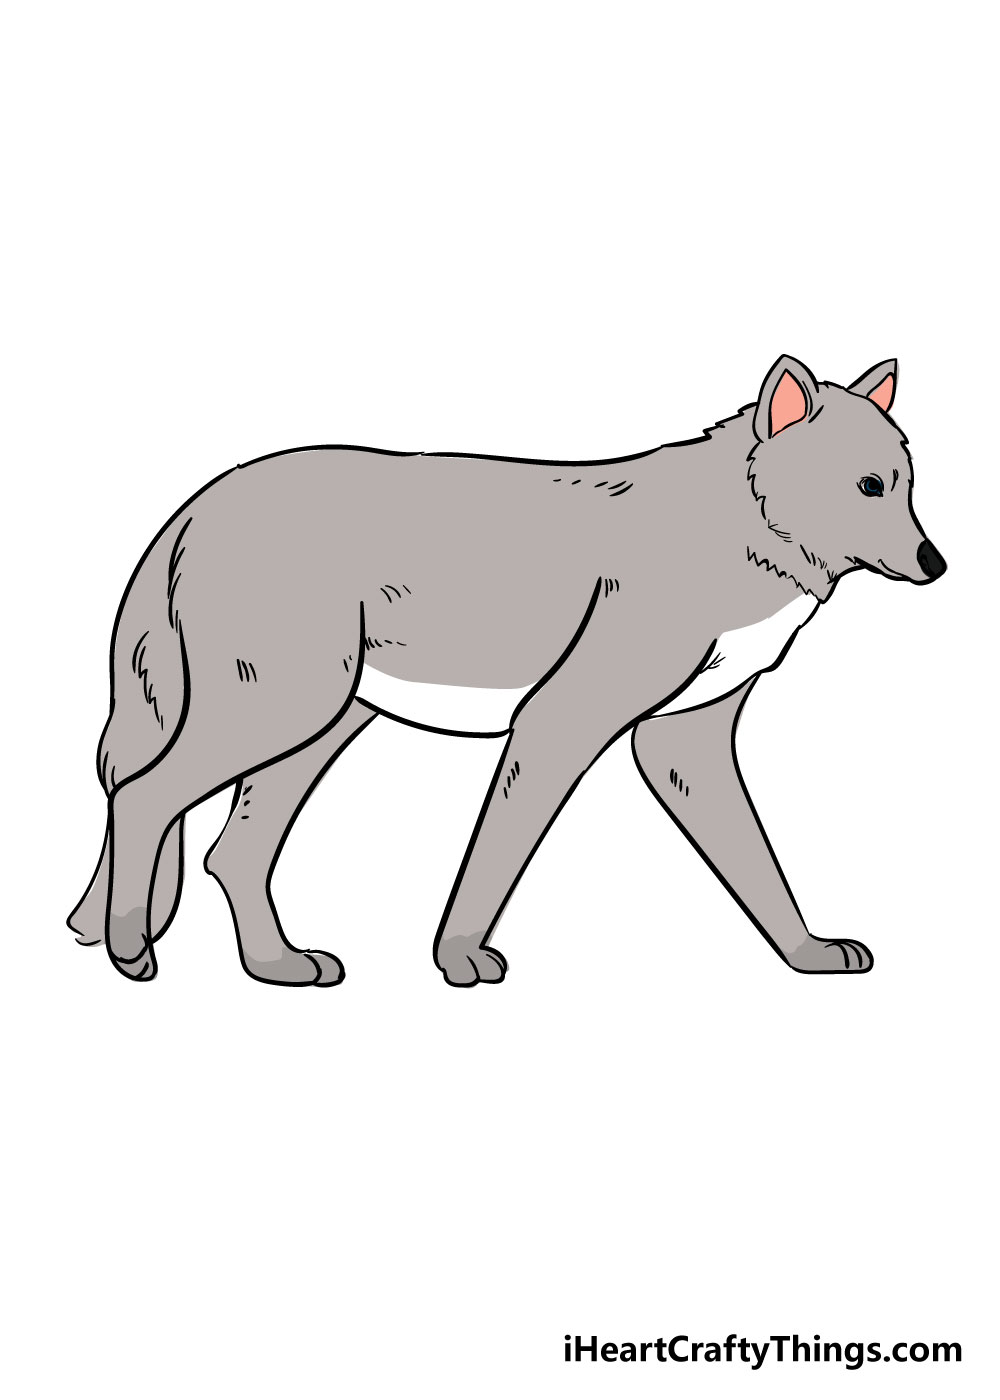 How to draw Wolf 6 - Hướng dẫn cách vẽ con chó sói đơn giản với 6 bước cơ bản